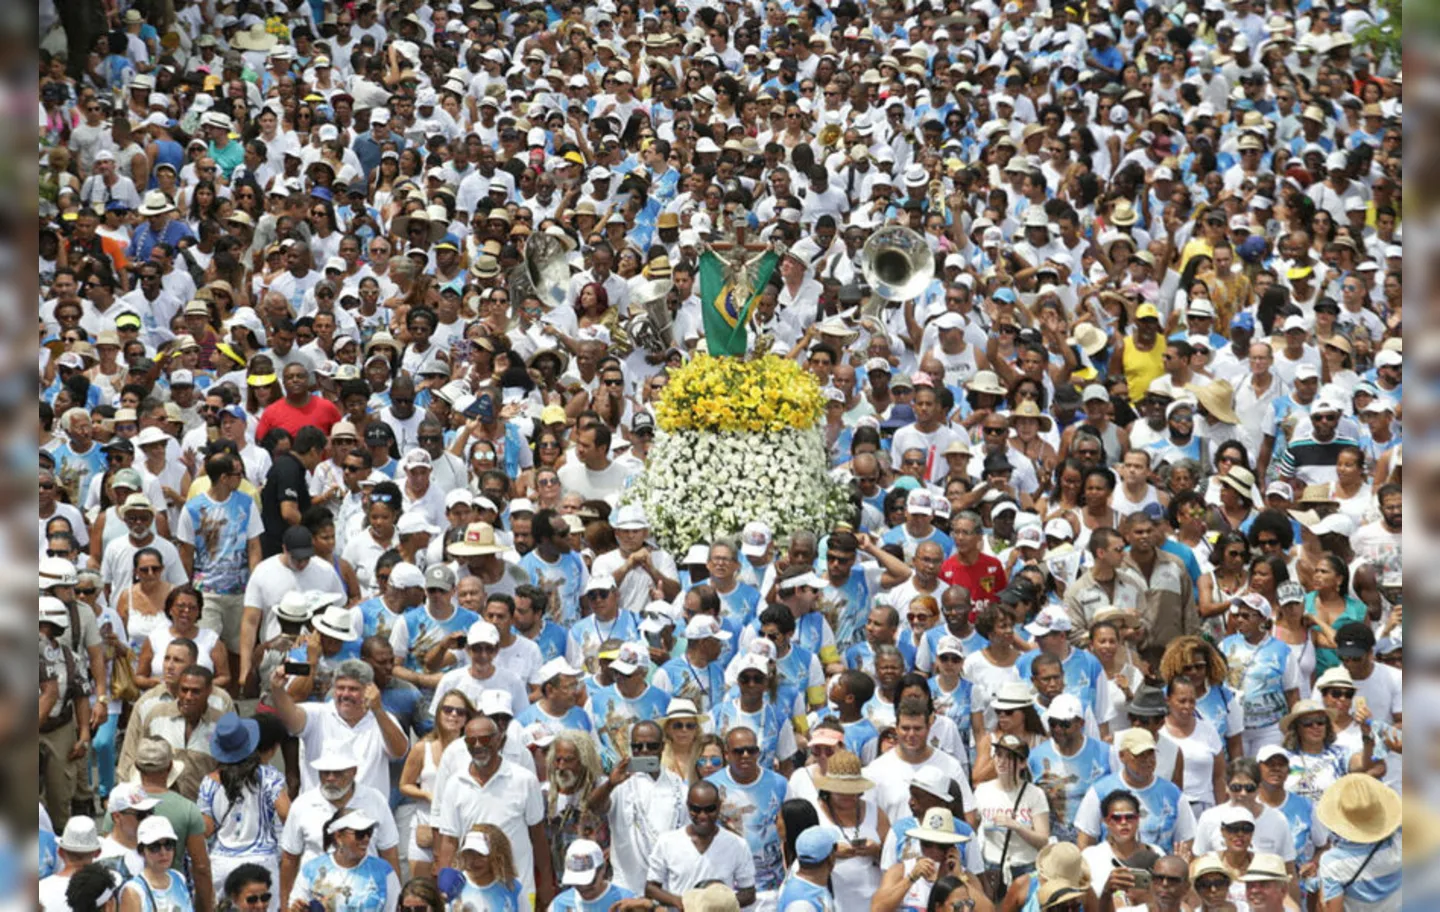 Cortejo com milhares de pessoas, da Conceição da Praia ao Bonfim